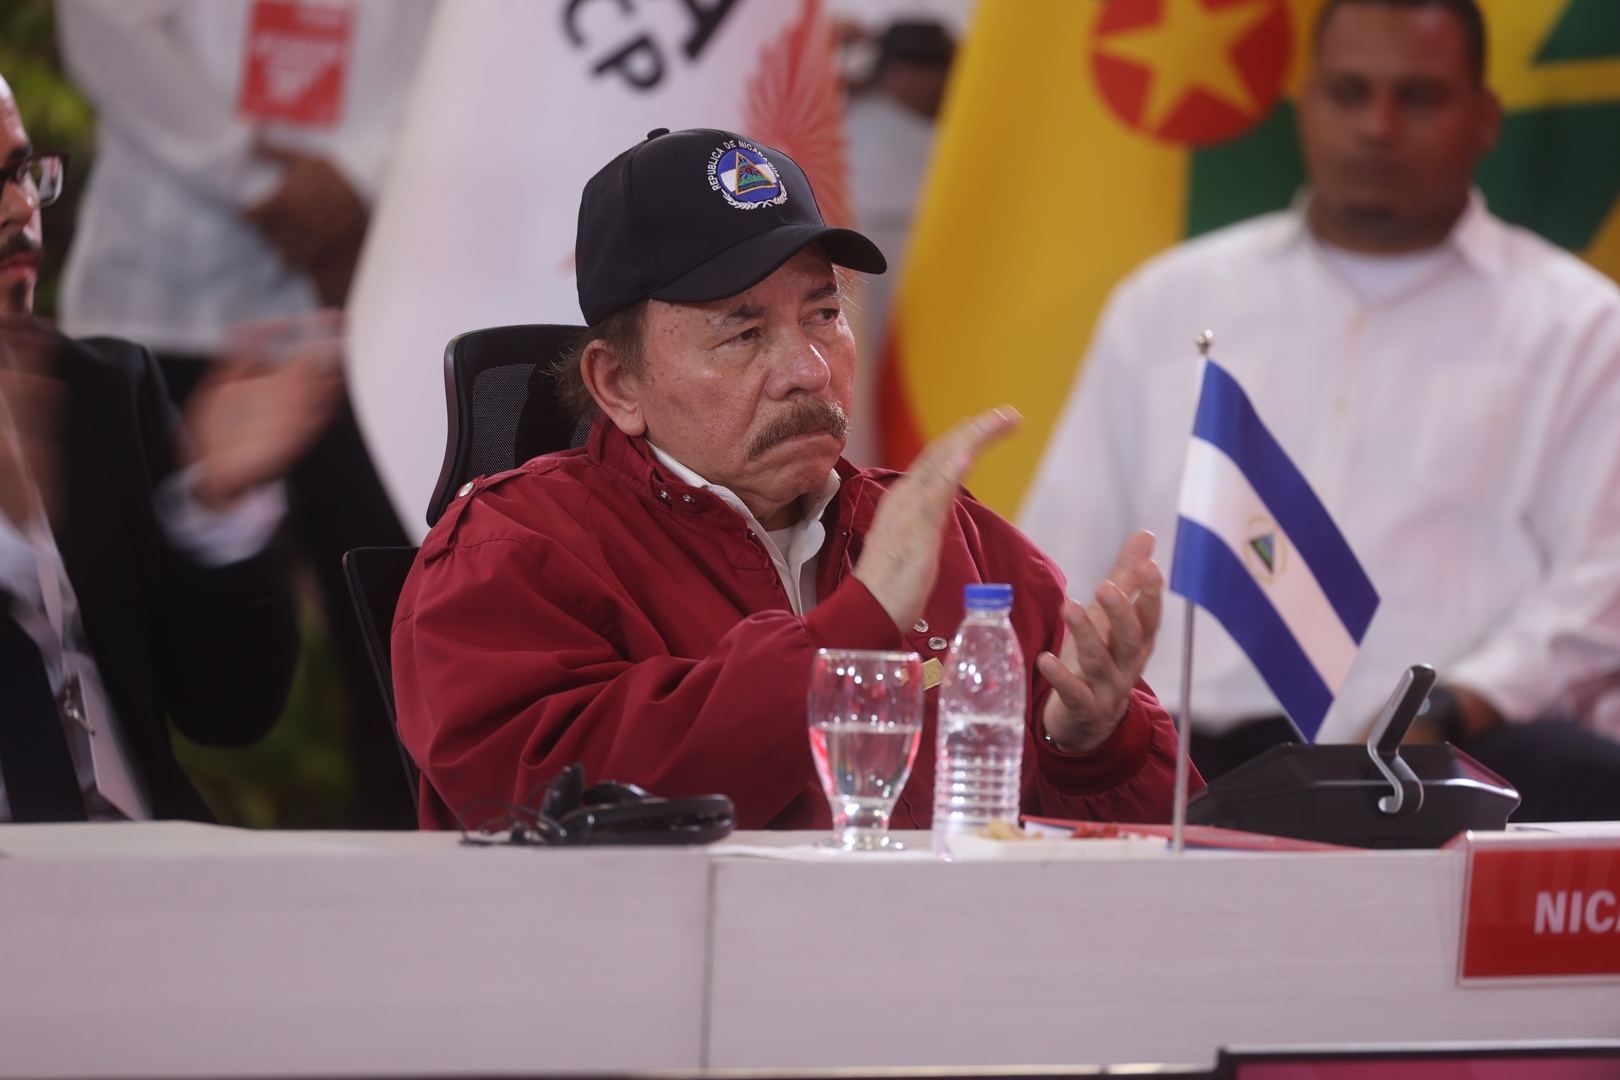 el gobierno de nicaragua acepta decisión de la cij que rechazó su demanda contra alemania